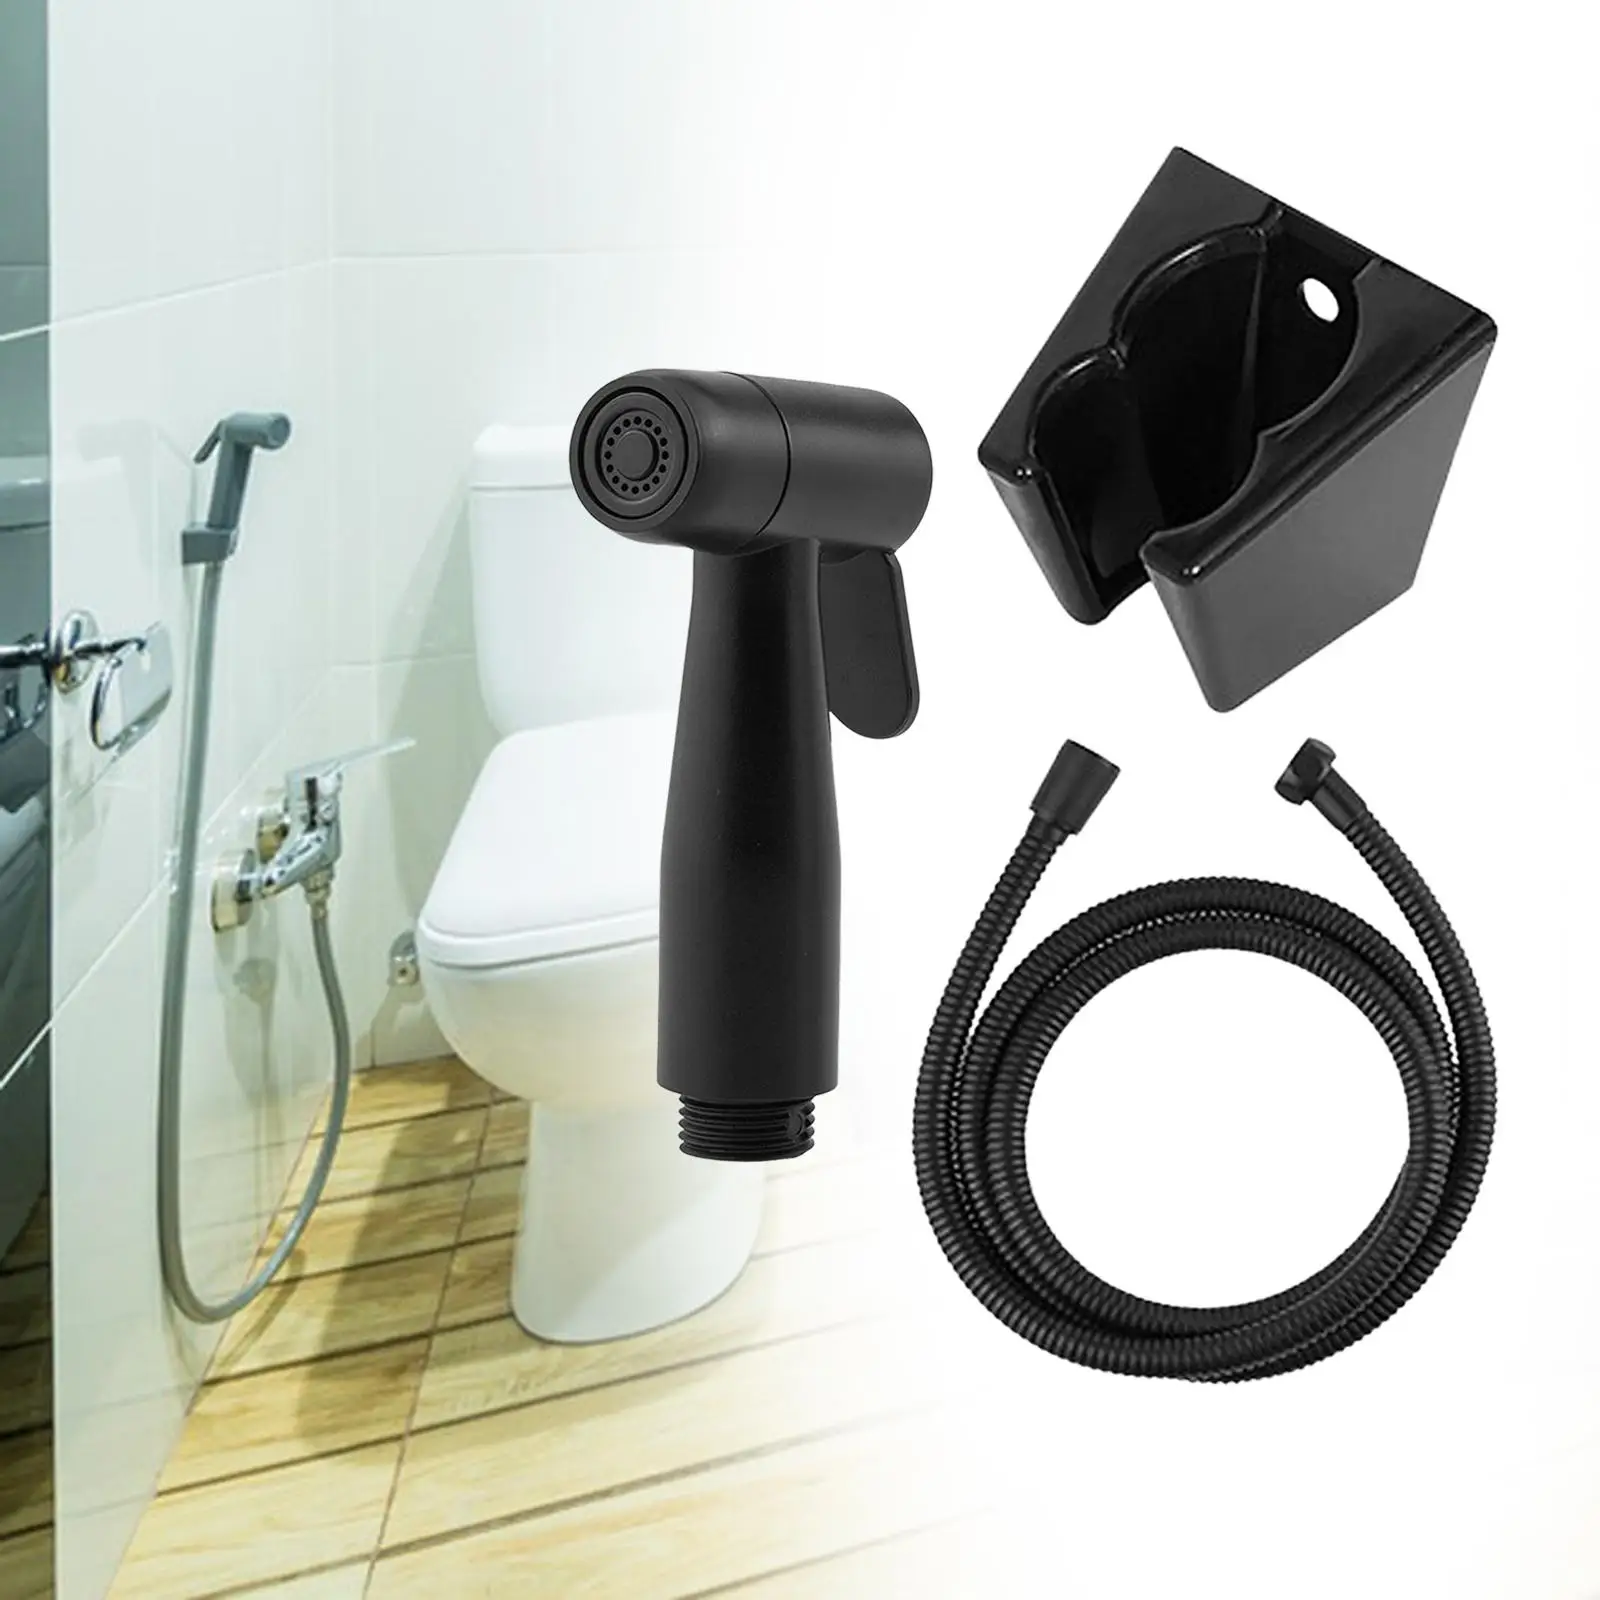 Bidet Toilet Sprayer Set Handheld Bidet Sprayer Attachment for Kitchen Toilet Cleaning Washroom Pet Shower Floor Cleaning